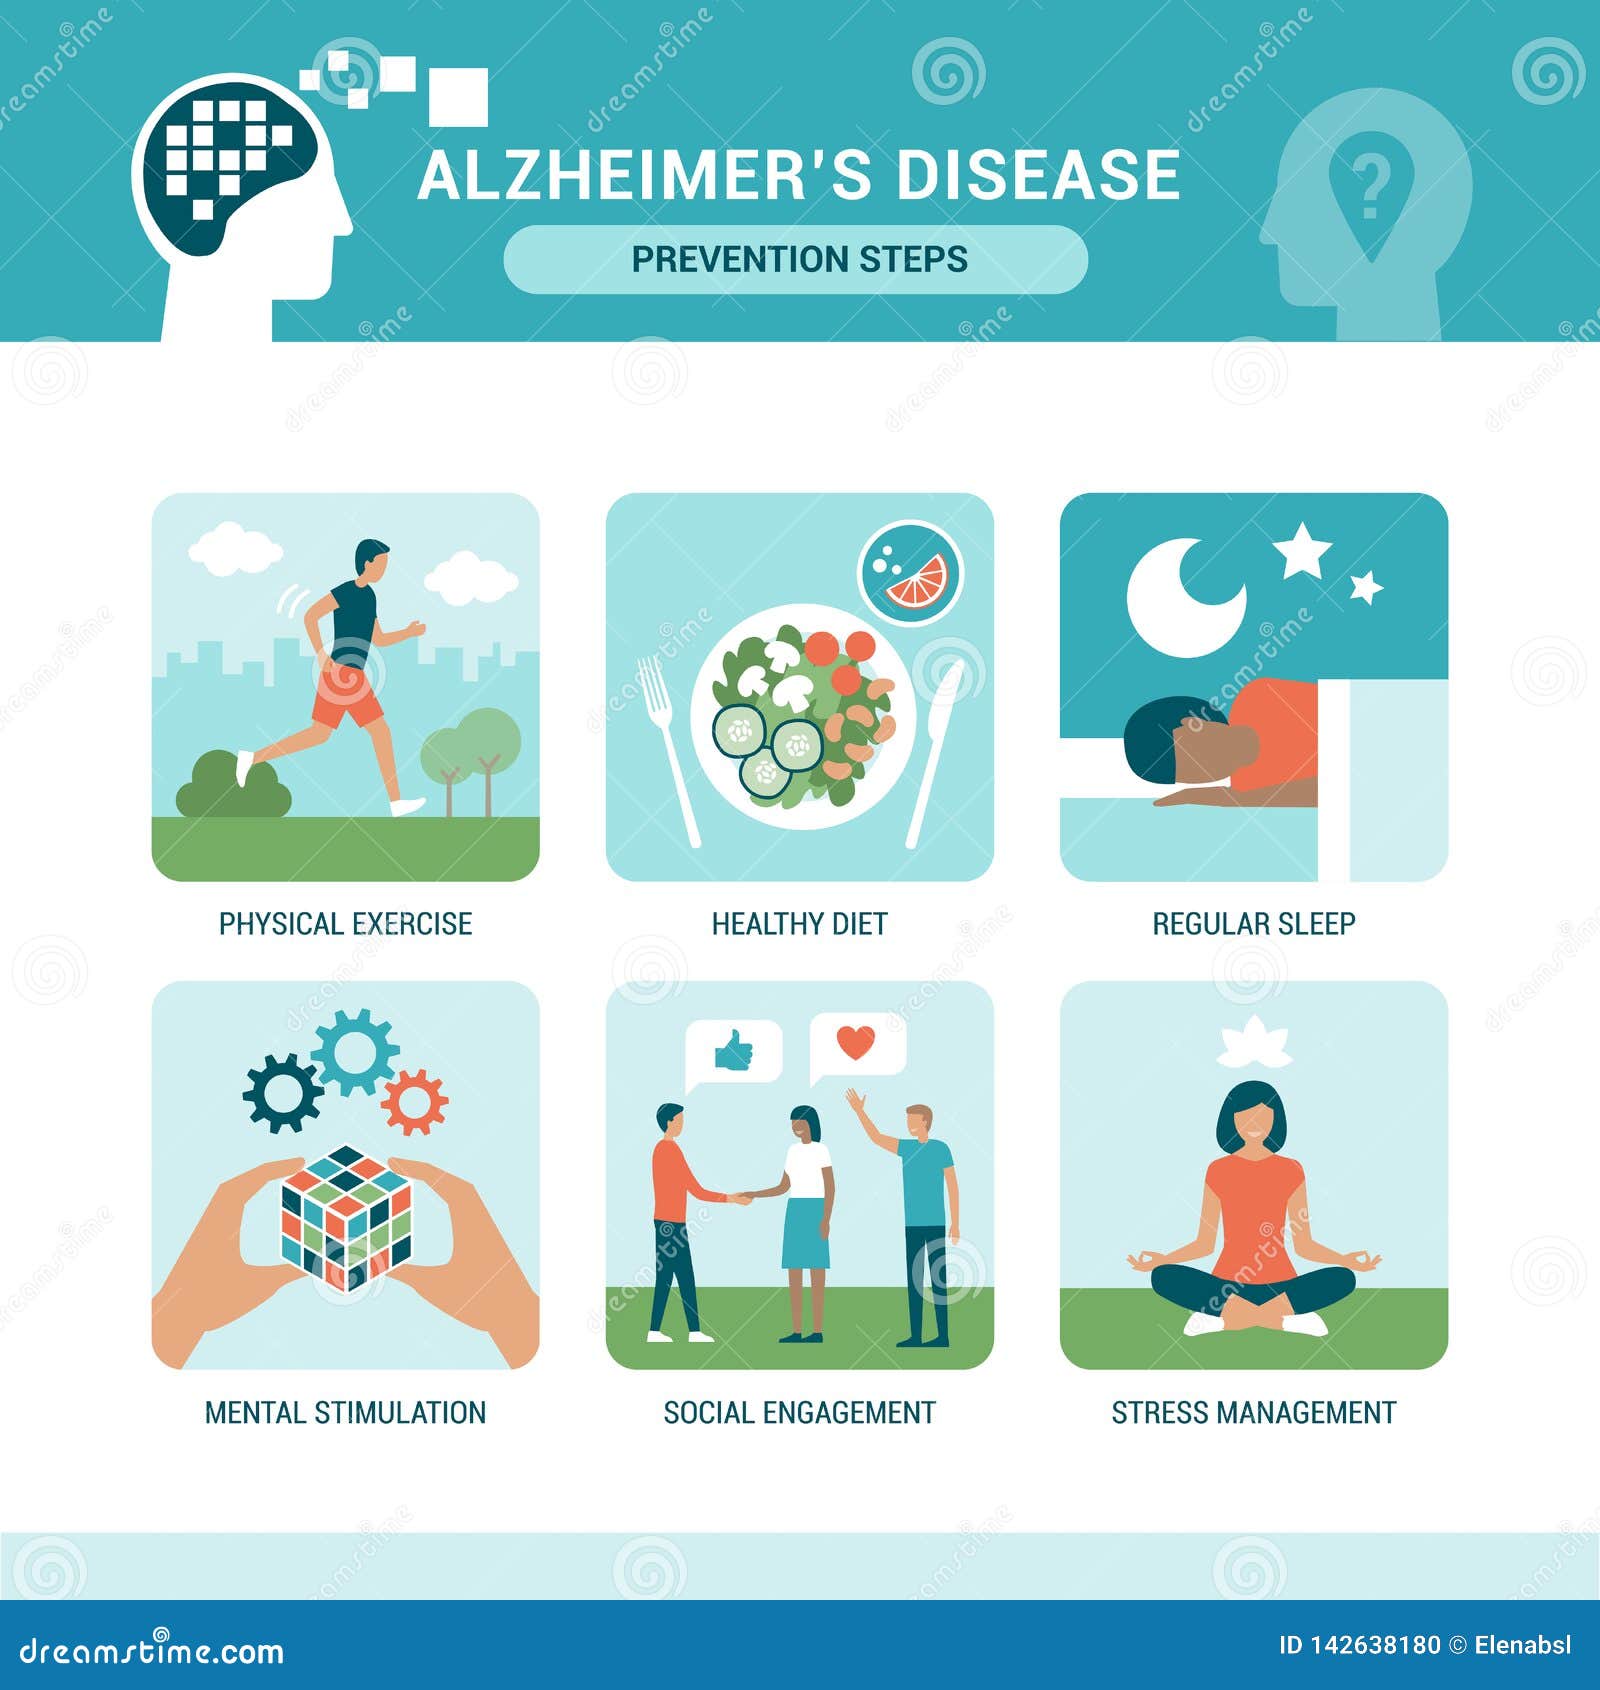 alzheimer`s disease prevention steps infographic